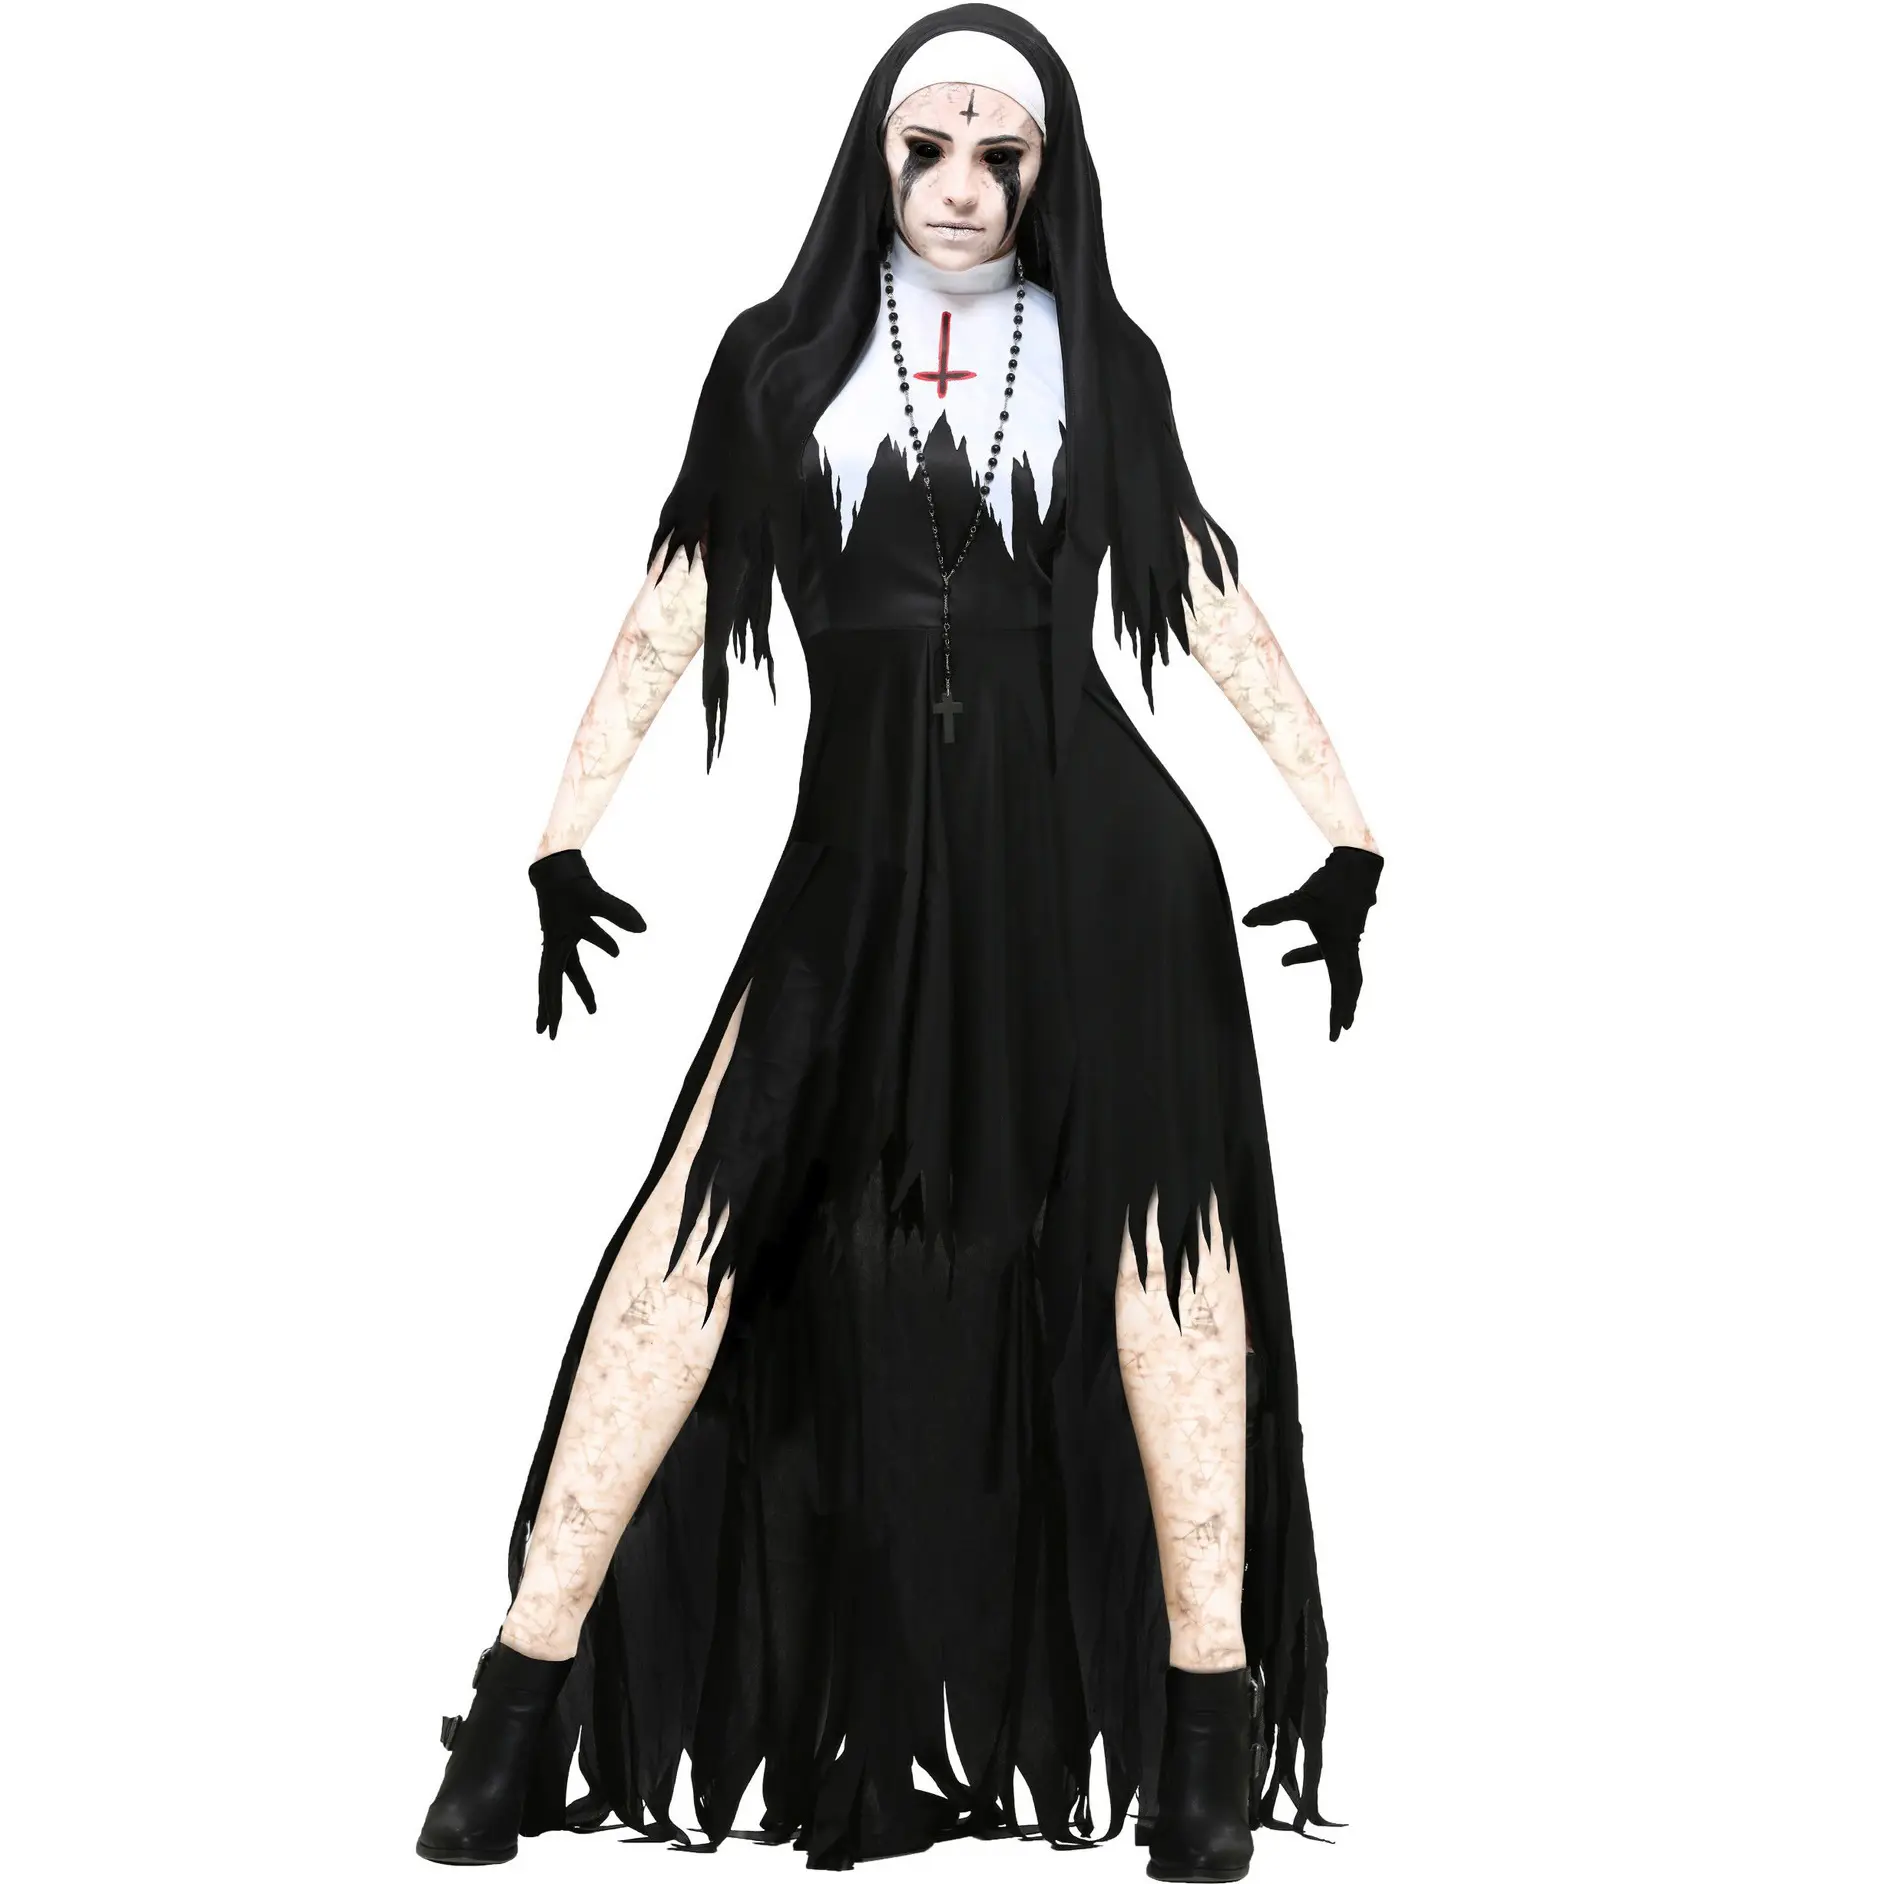 Cosplay bayanlar cadılar bayramı rahibe kostüm Cosplay Cosplay vampir şeytan kostüm kadın parti cadılar bayramı kostümü